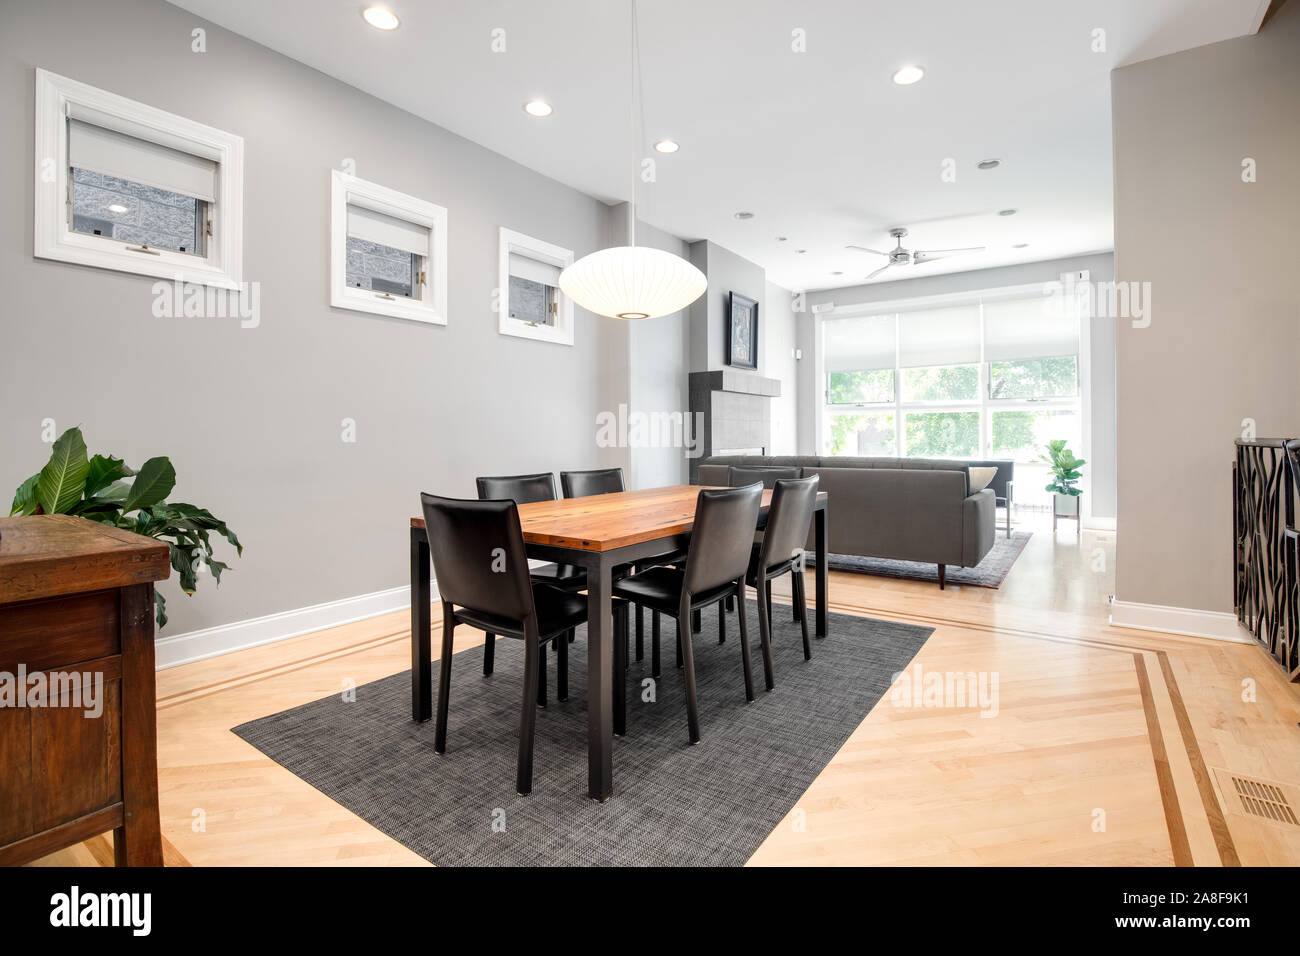 Ein luxuriöser Speisesaal, der mit dem Wohnzimmer verbunden ist. Dieses geräumige Bereich kann ein großer Tisch mit einem modernen Licht nach unten hängen über der Oberseite anbringen. Stockfoto